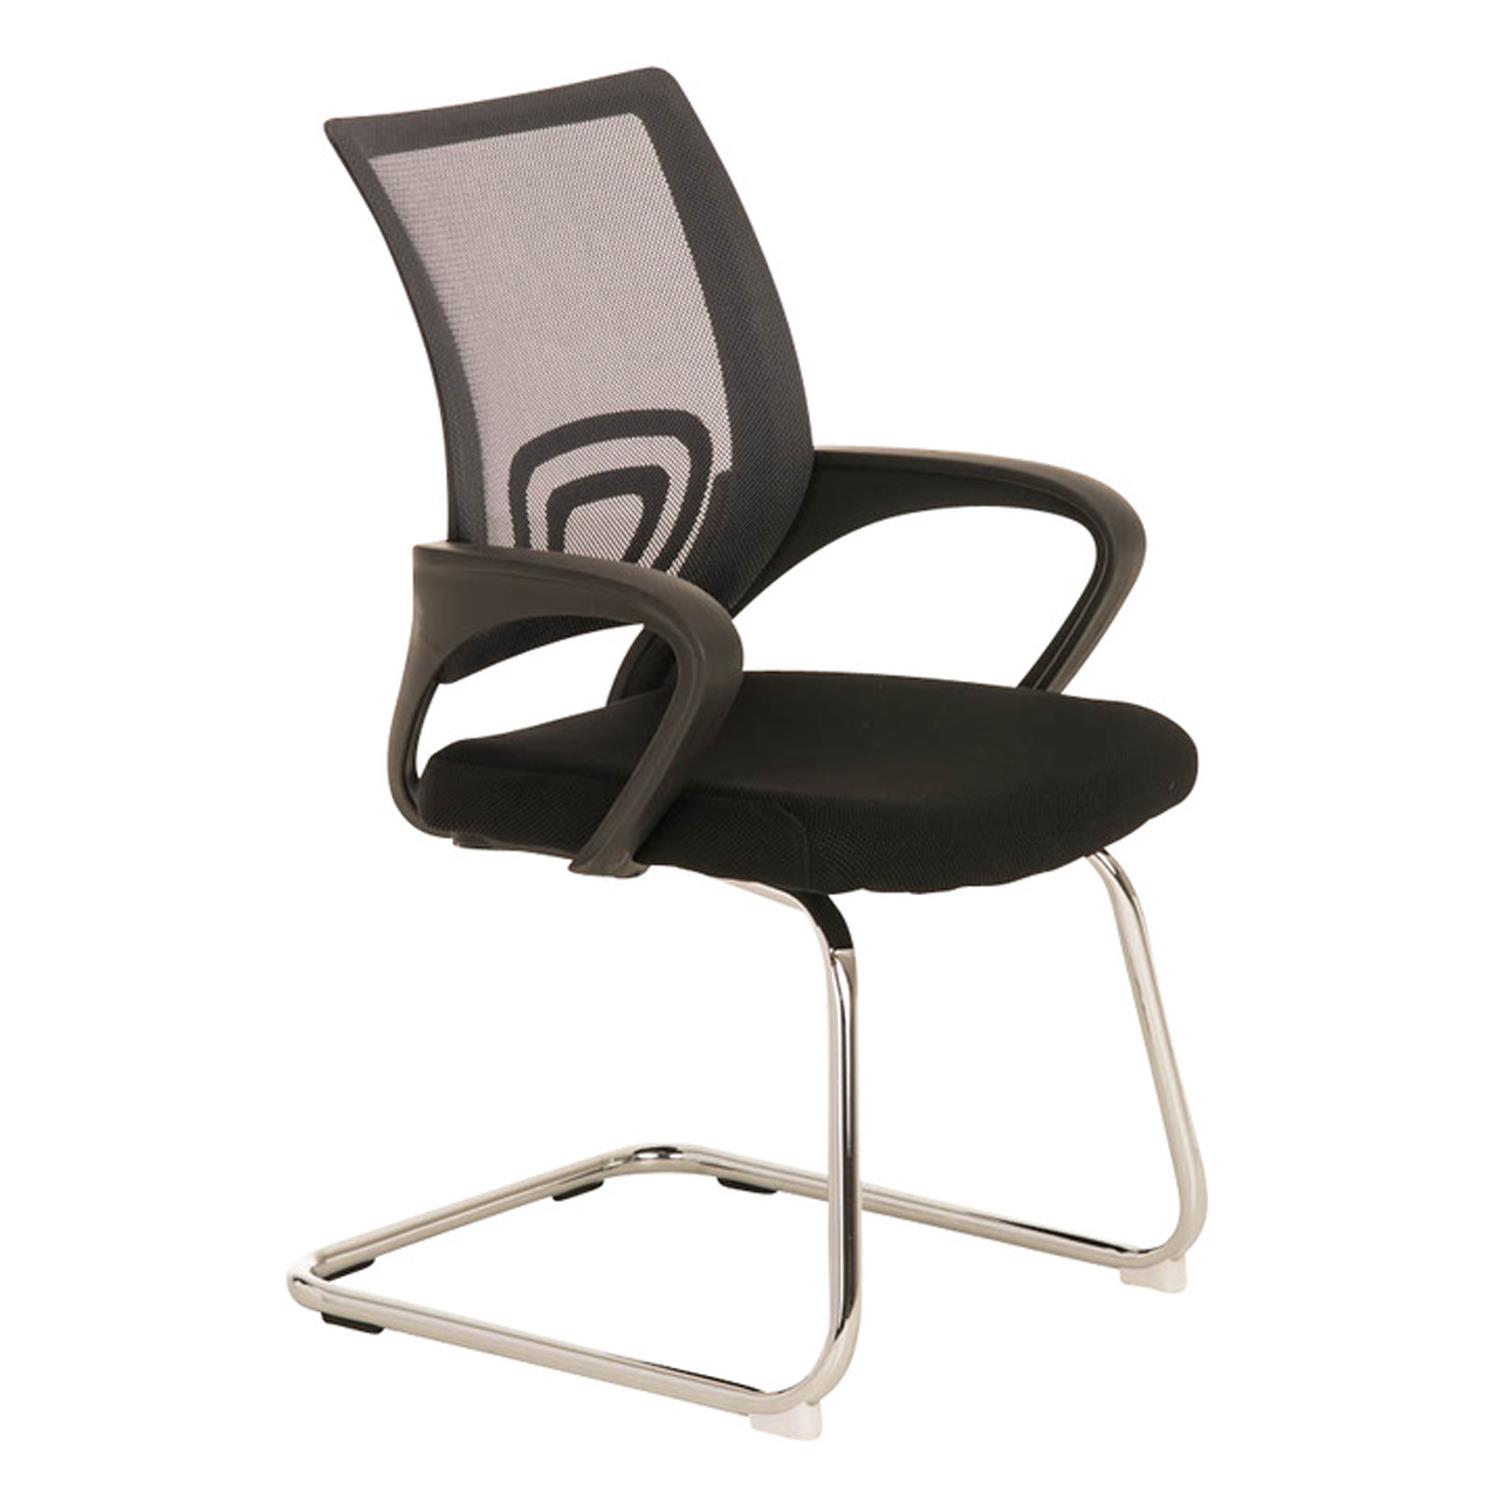 Cadeira de Visita SEUL V, Design Atractivo, Assento Acolchoado, Cor Cinzento